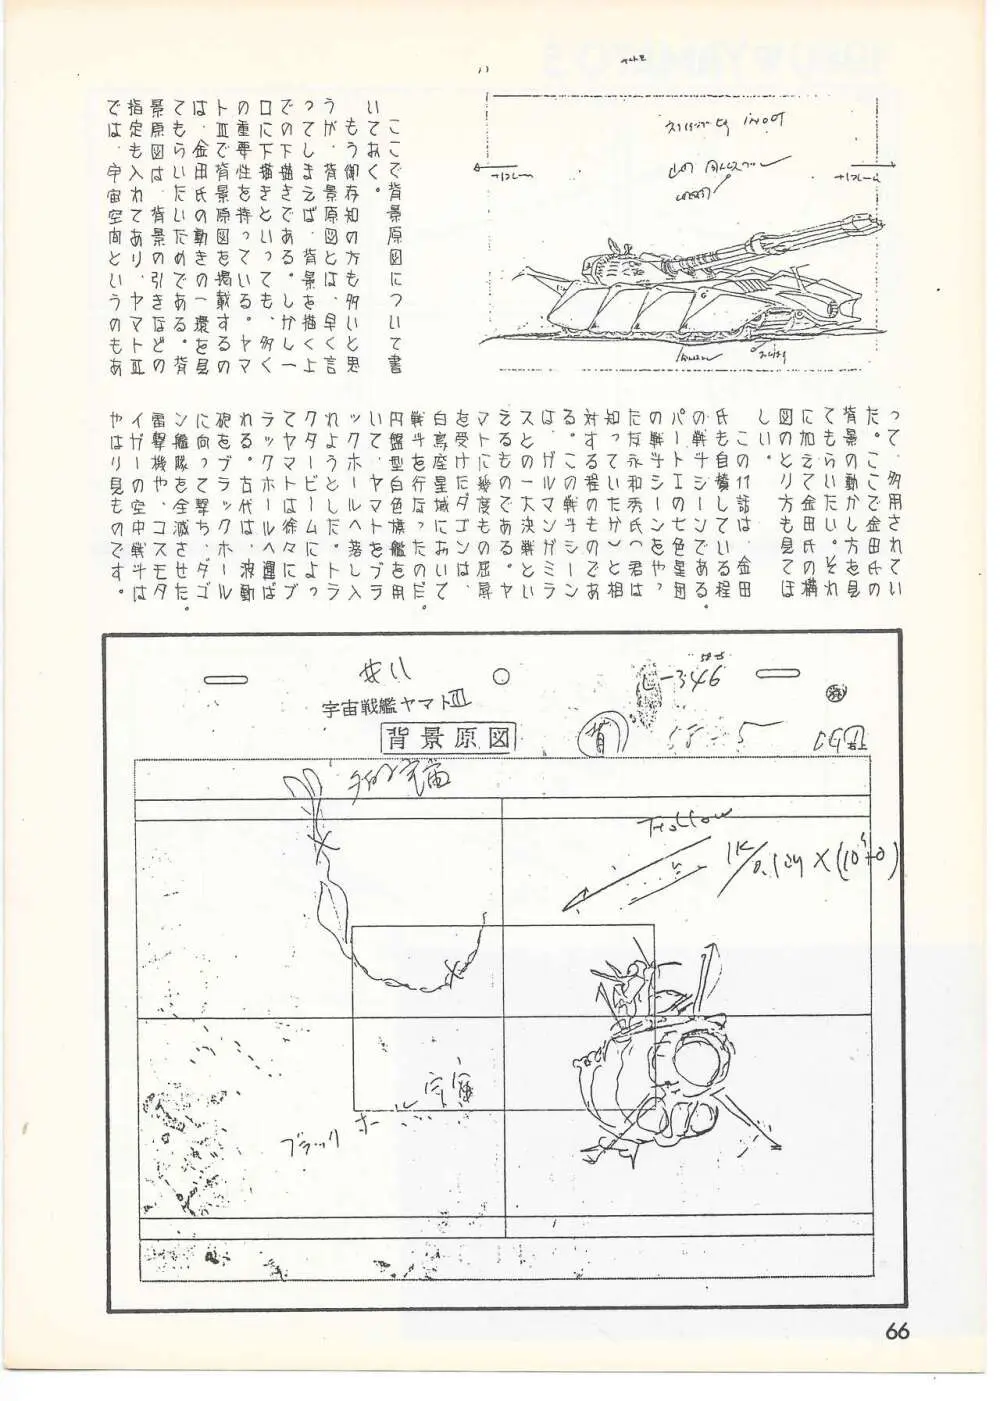 THE ANIMATOR 1 金田伊功特集号 63ページ